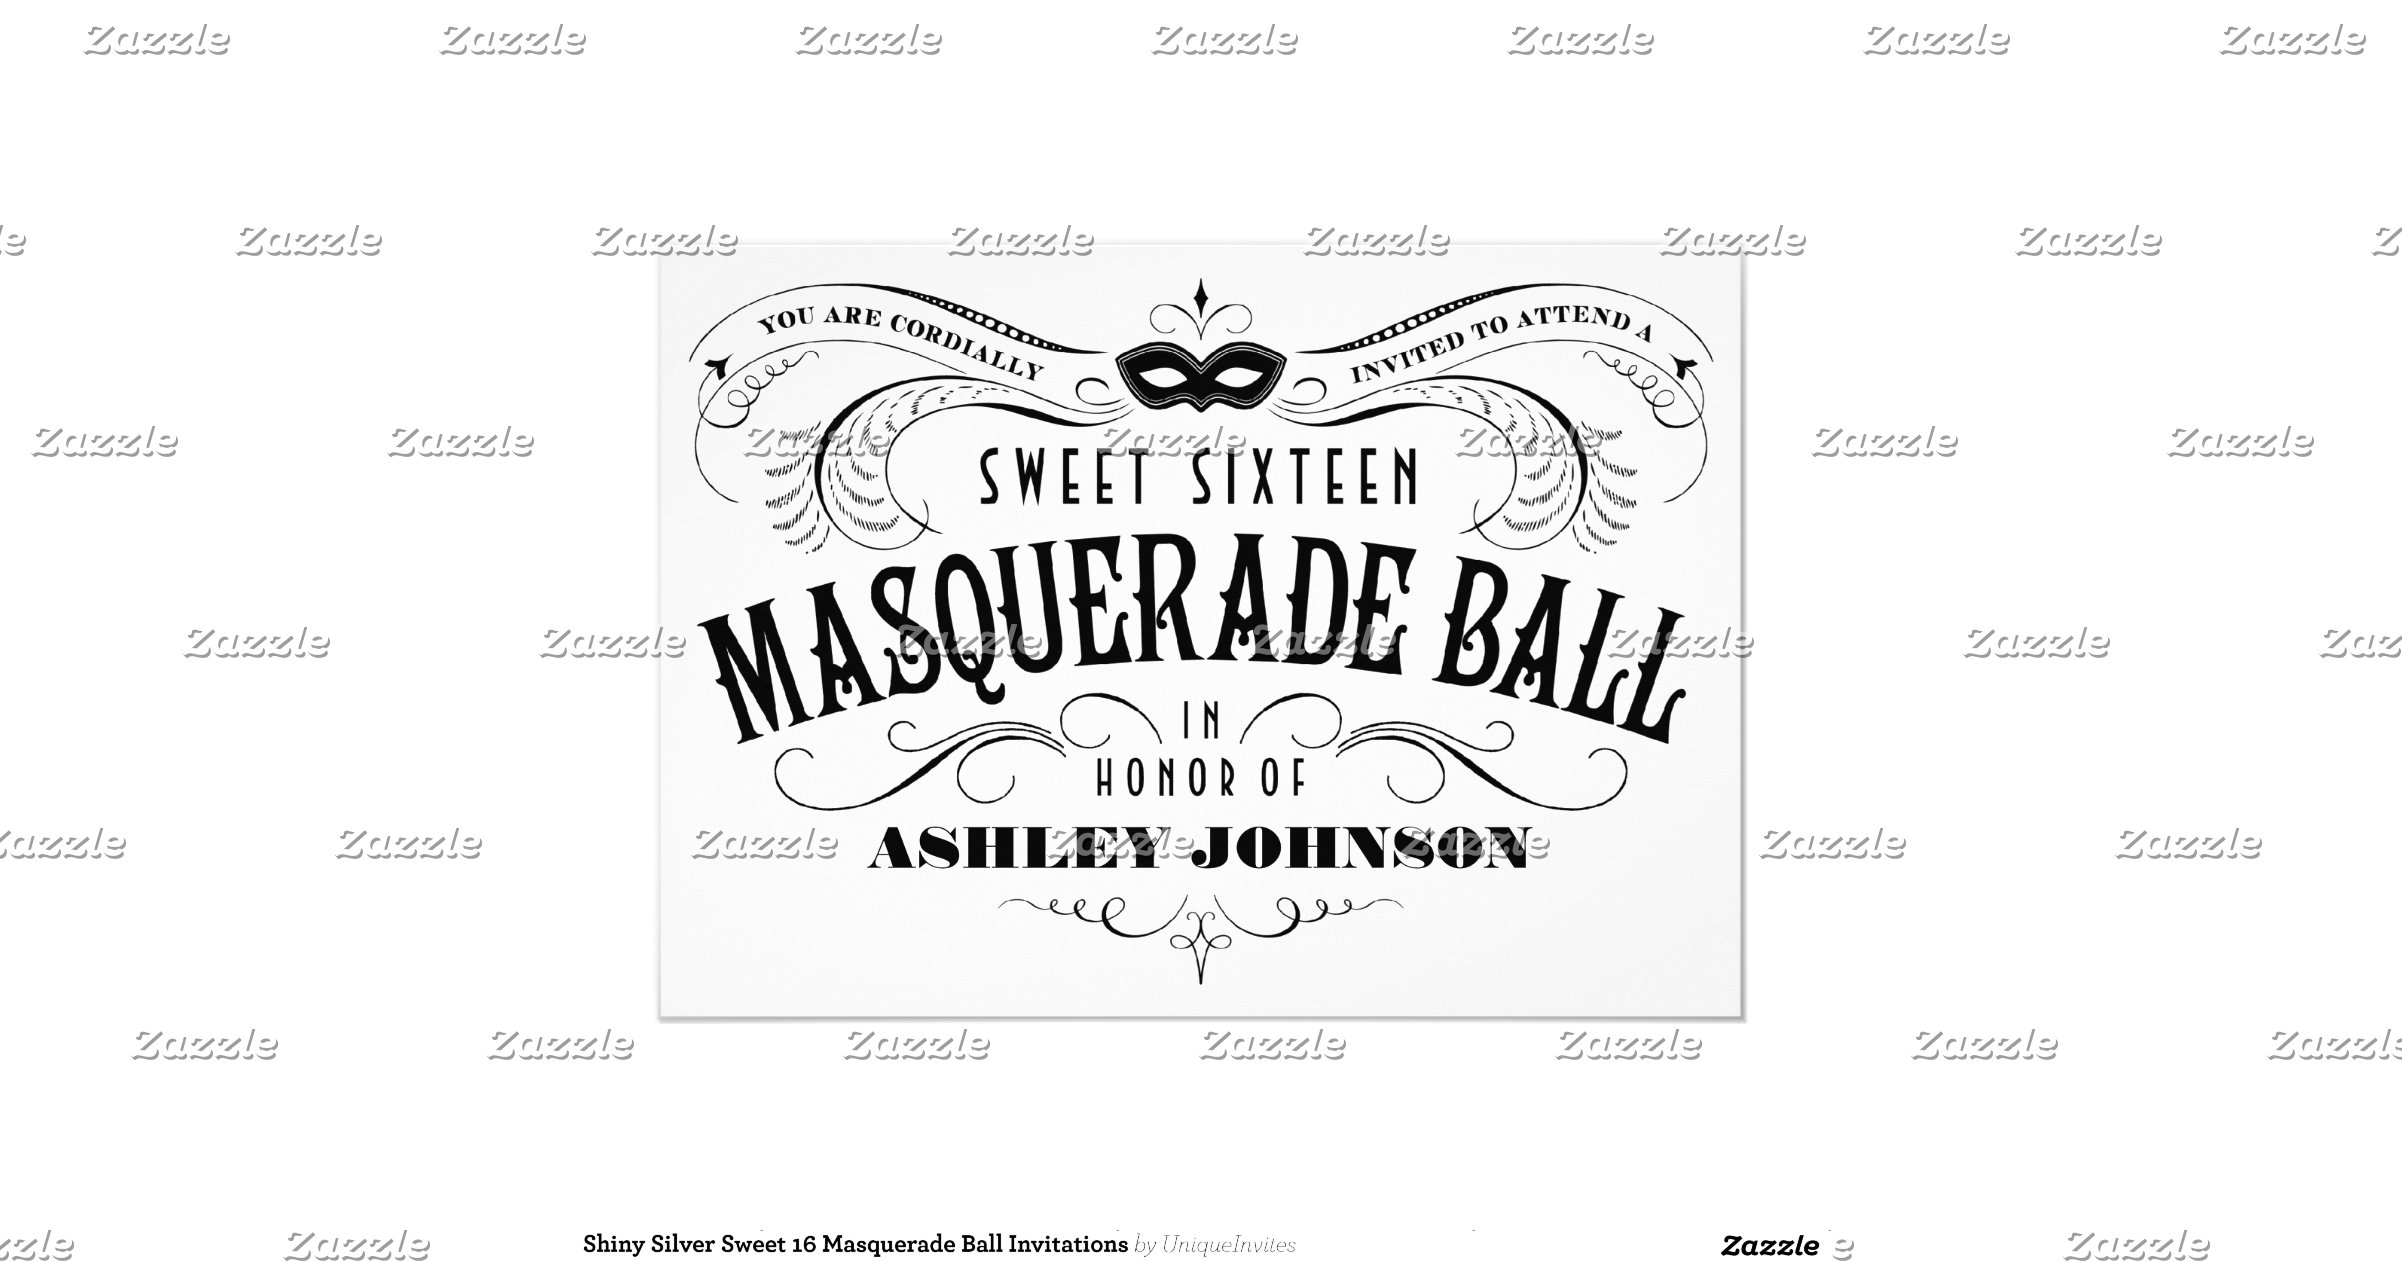 Shiny Silver Sweet 16 Masquerade Ball Invitations